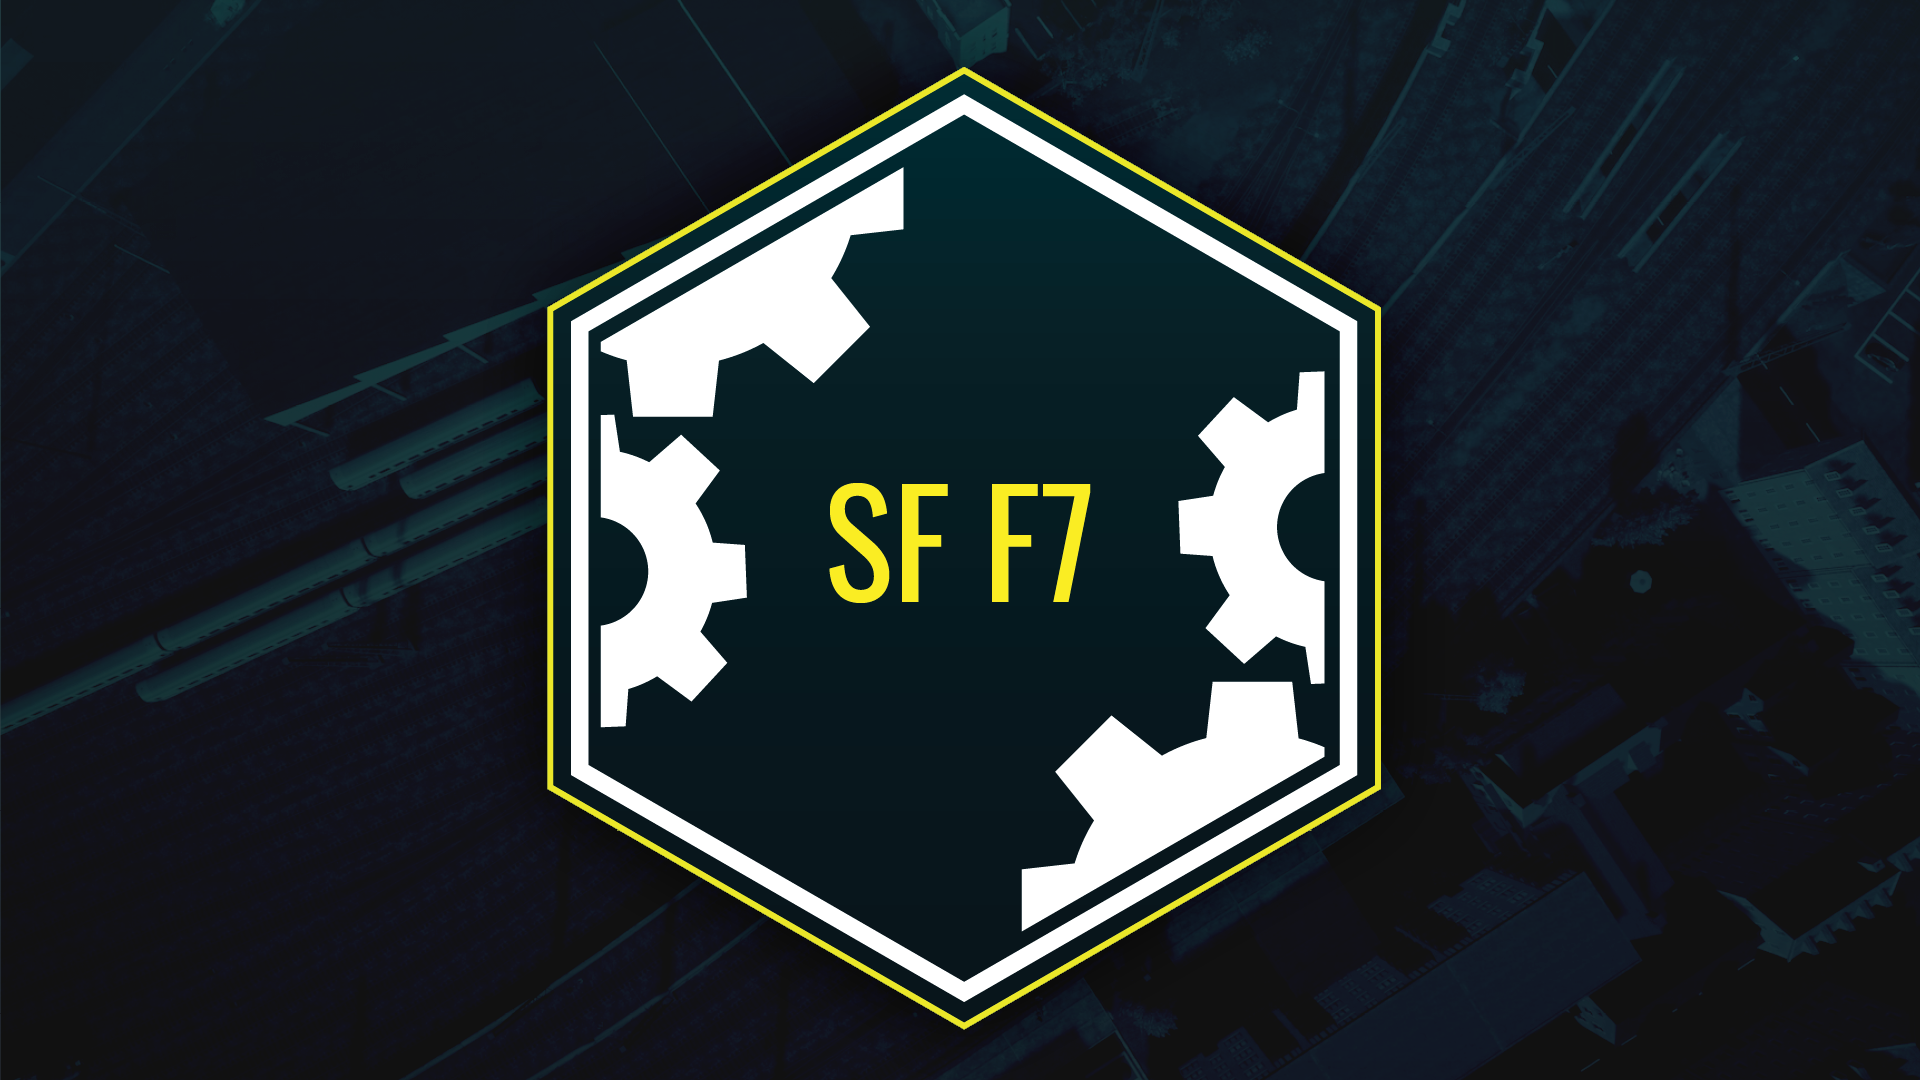 SF F7: Smart Deco